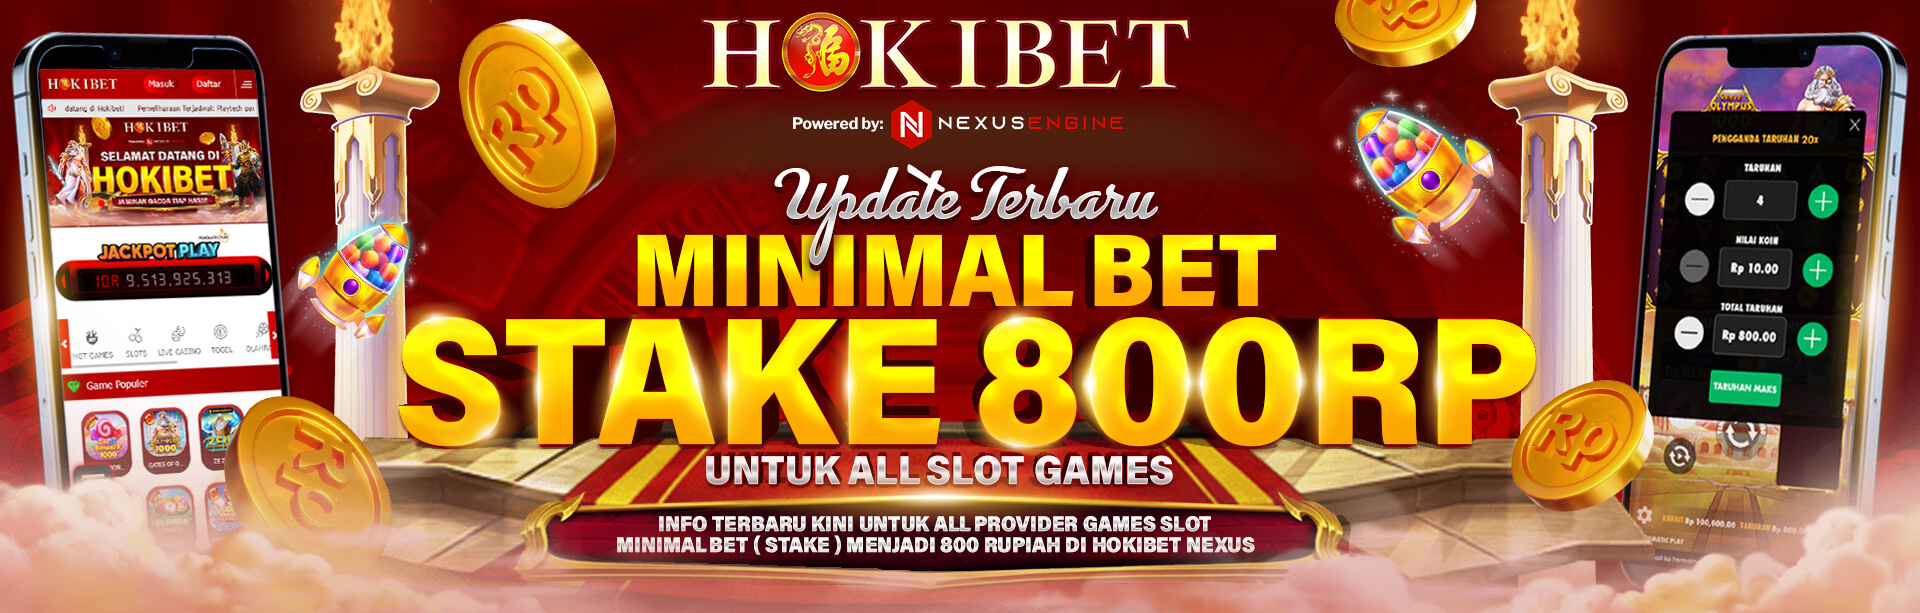 Update Terbaru Minimal Bet All Slot Games 800 Rupiah	